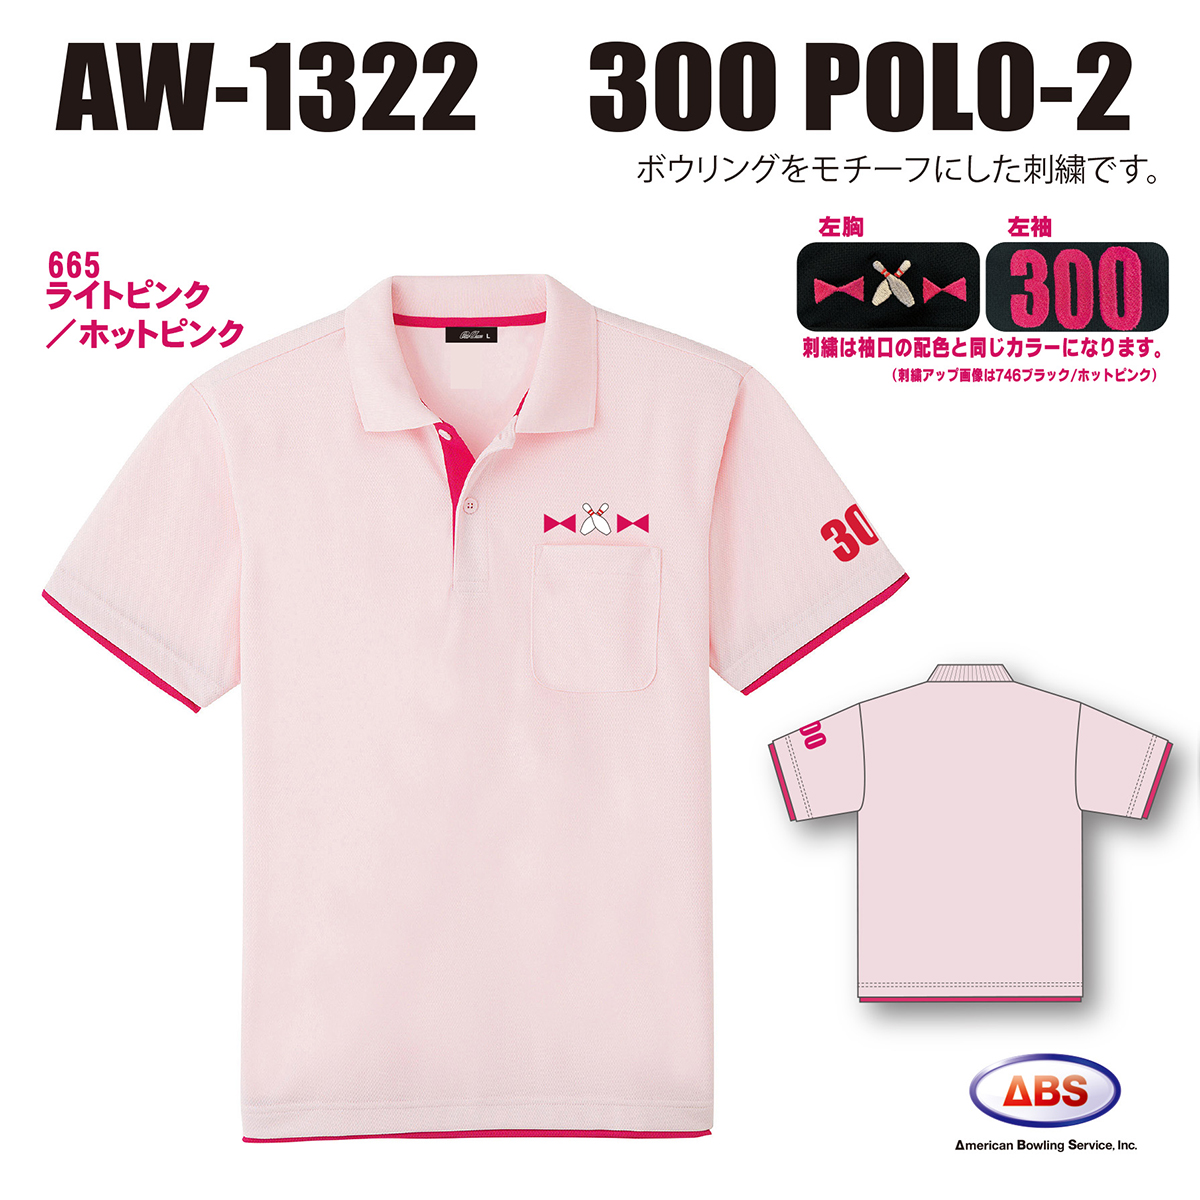 AW-1322 300POLO-2(受注生産)